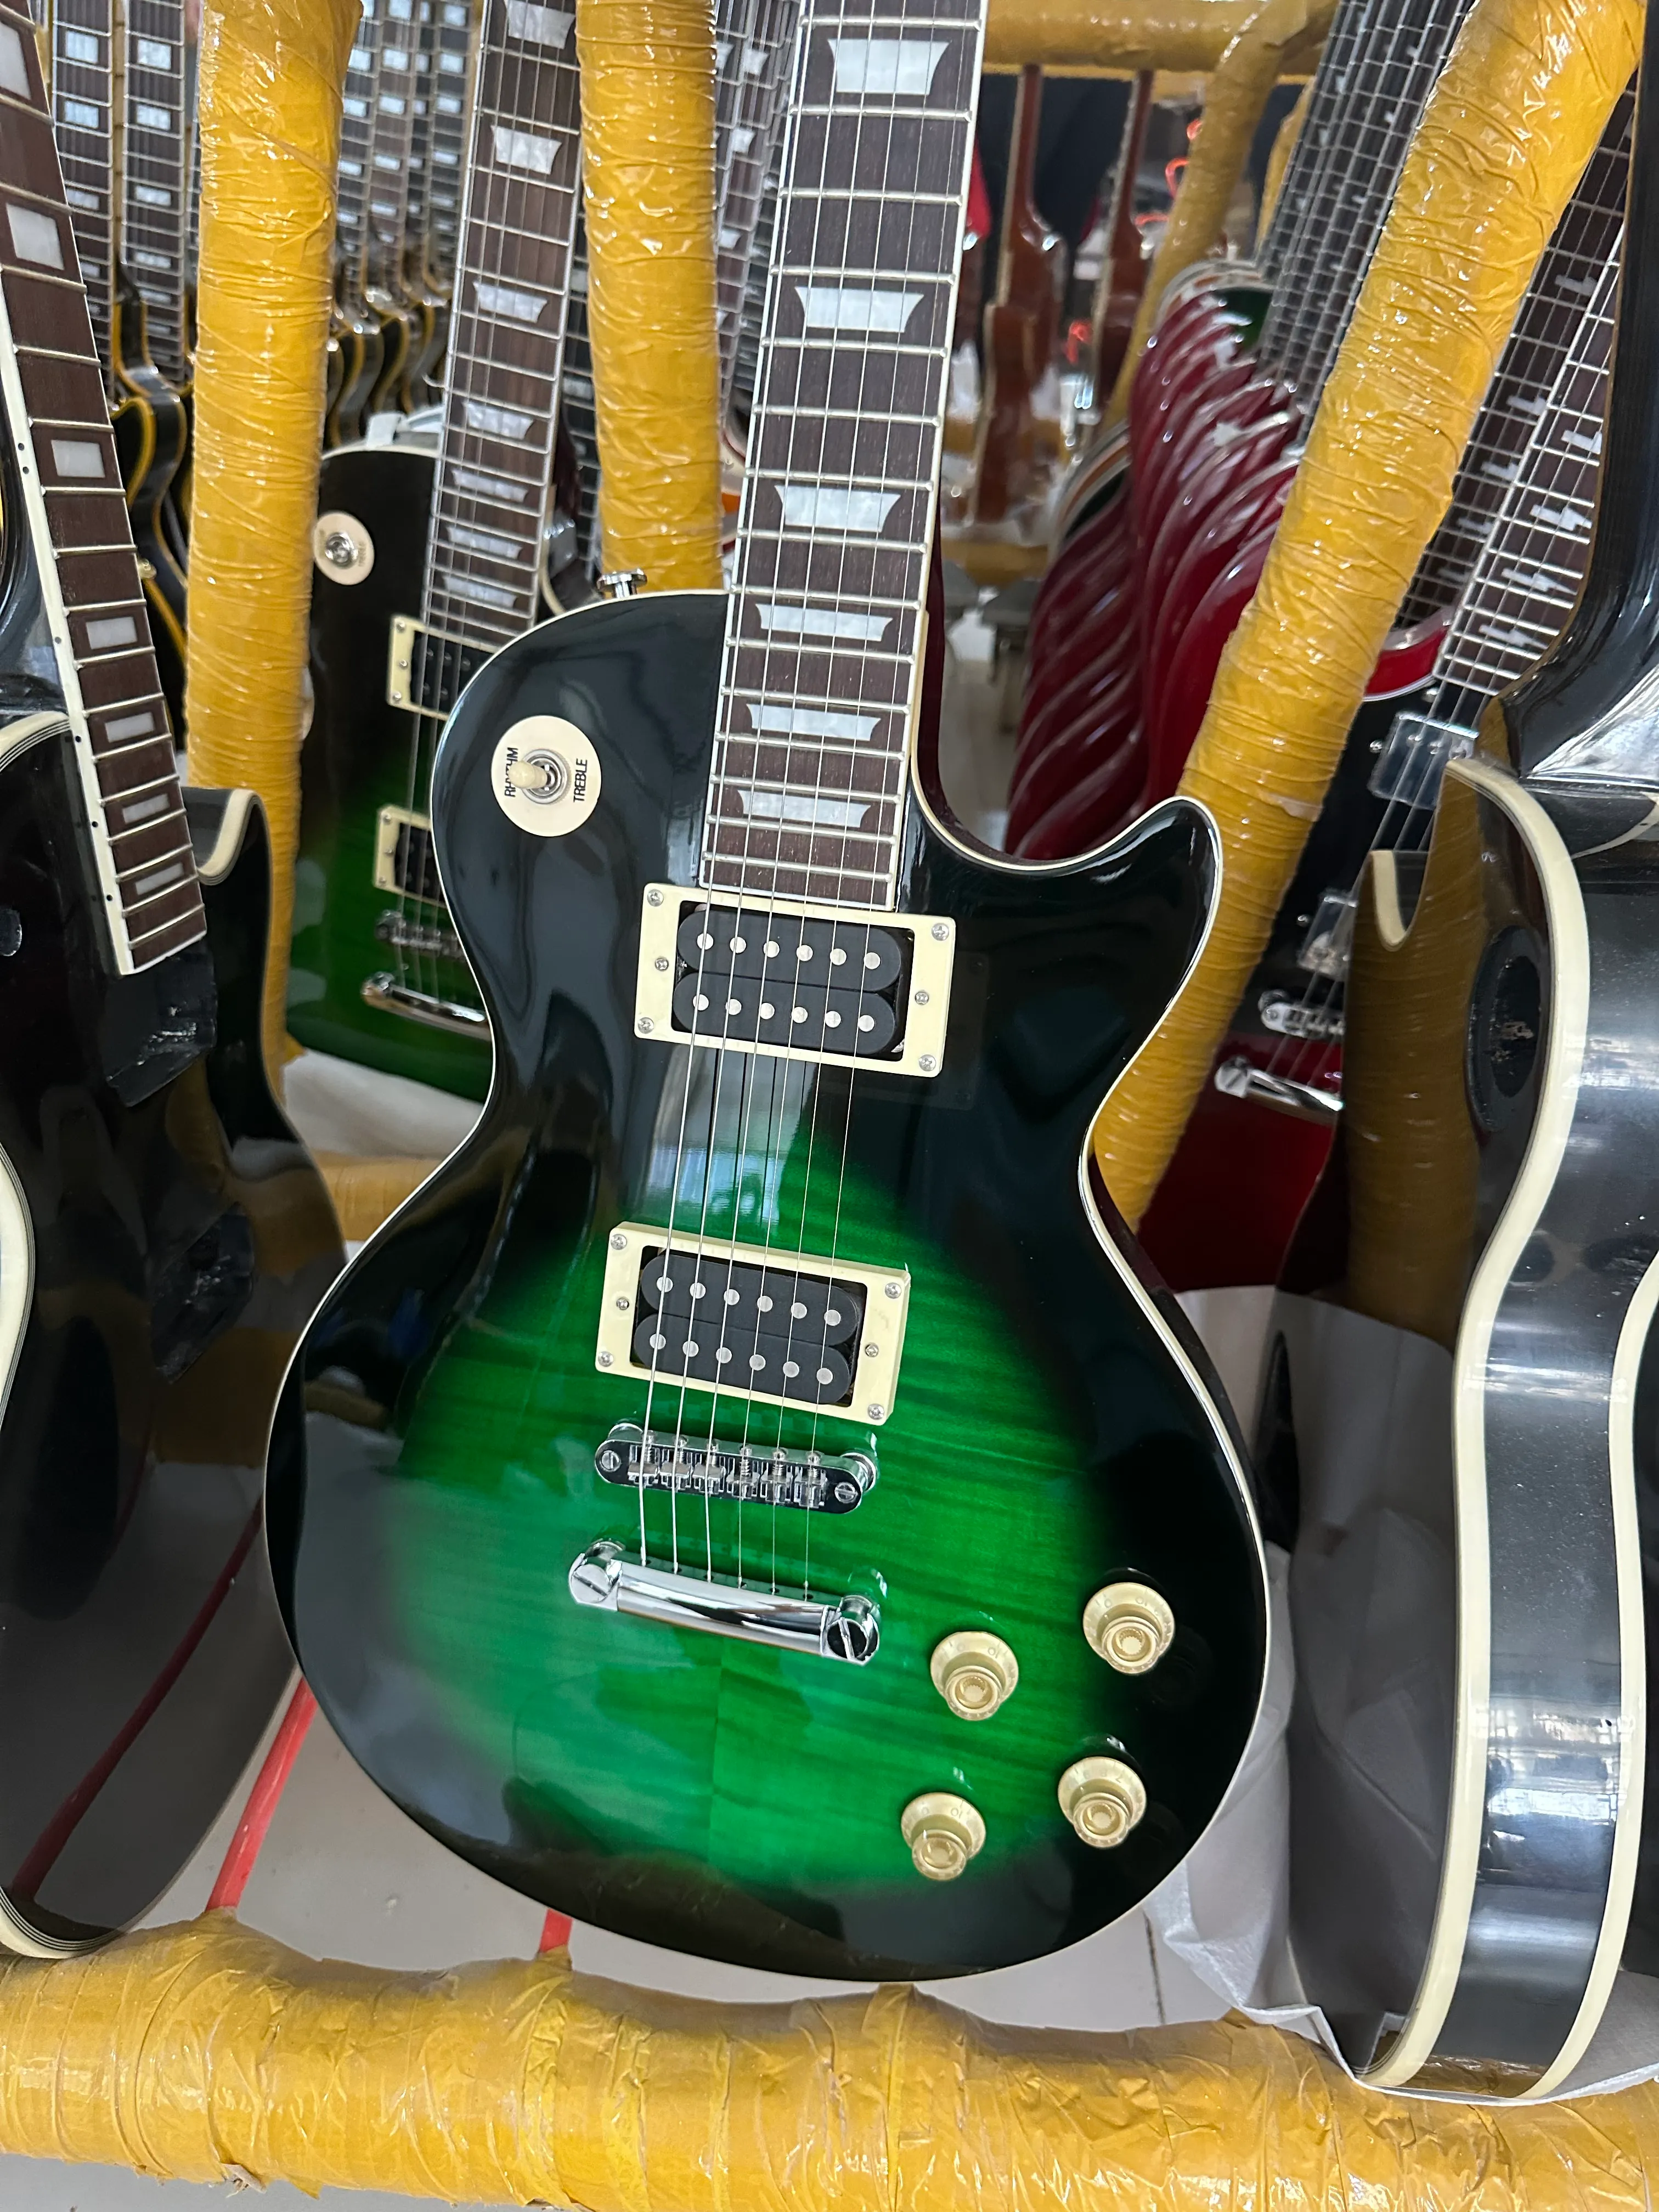 Standard elektrisk gitarr, Python Green, med importerat fint tigermönster, silver, importerat trä, snabb transport